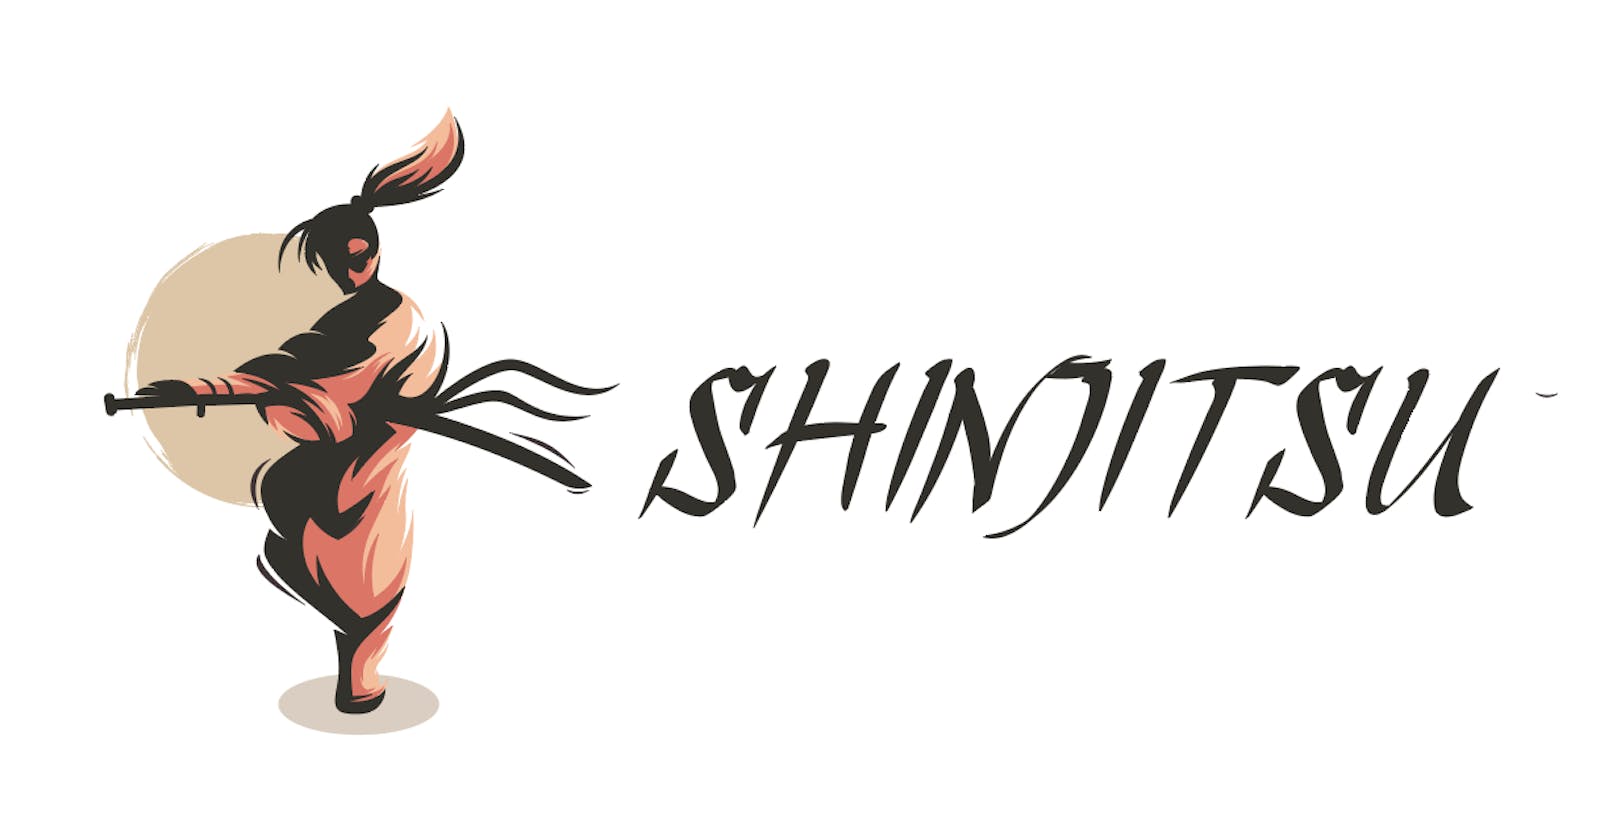 Shinjitsu -Whitepaper